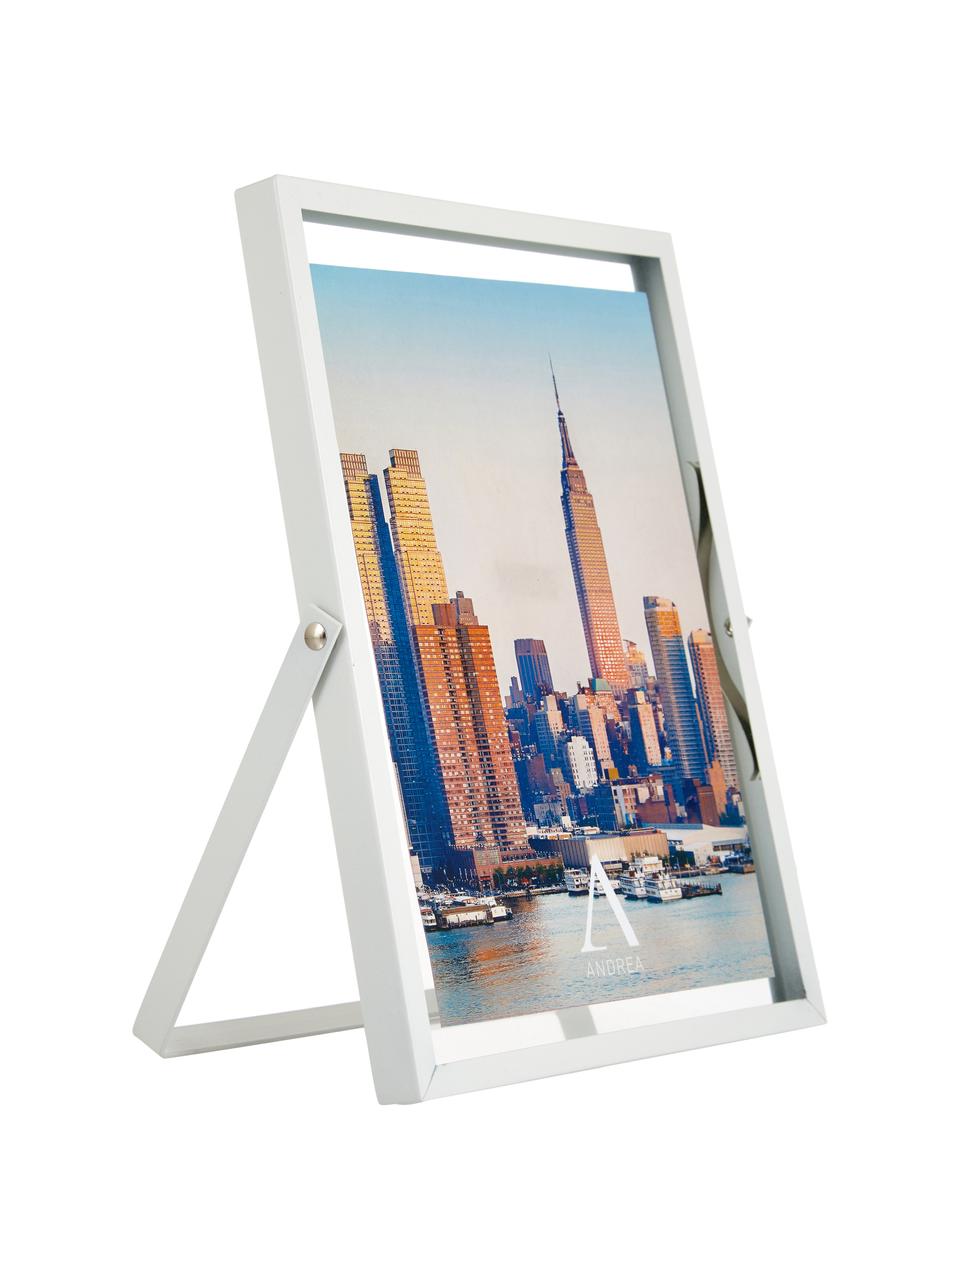 Bilderrahmen Marco, Rahmen: Metall, Front: Glas, Weiß, 15 x 20 cm